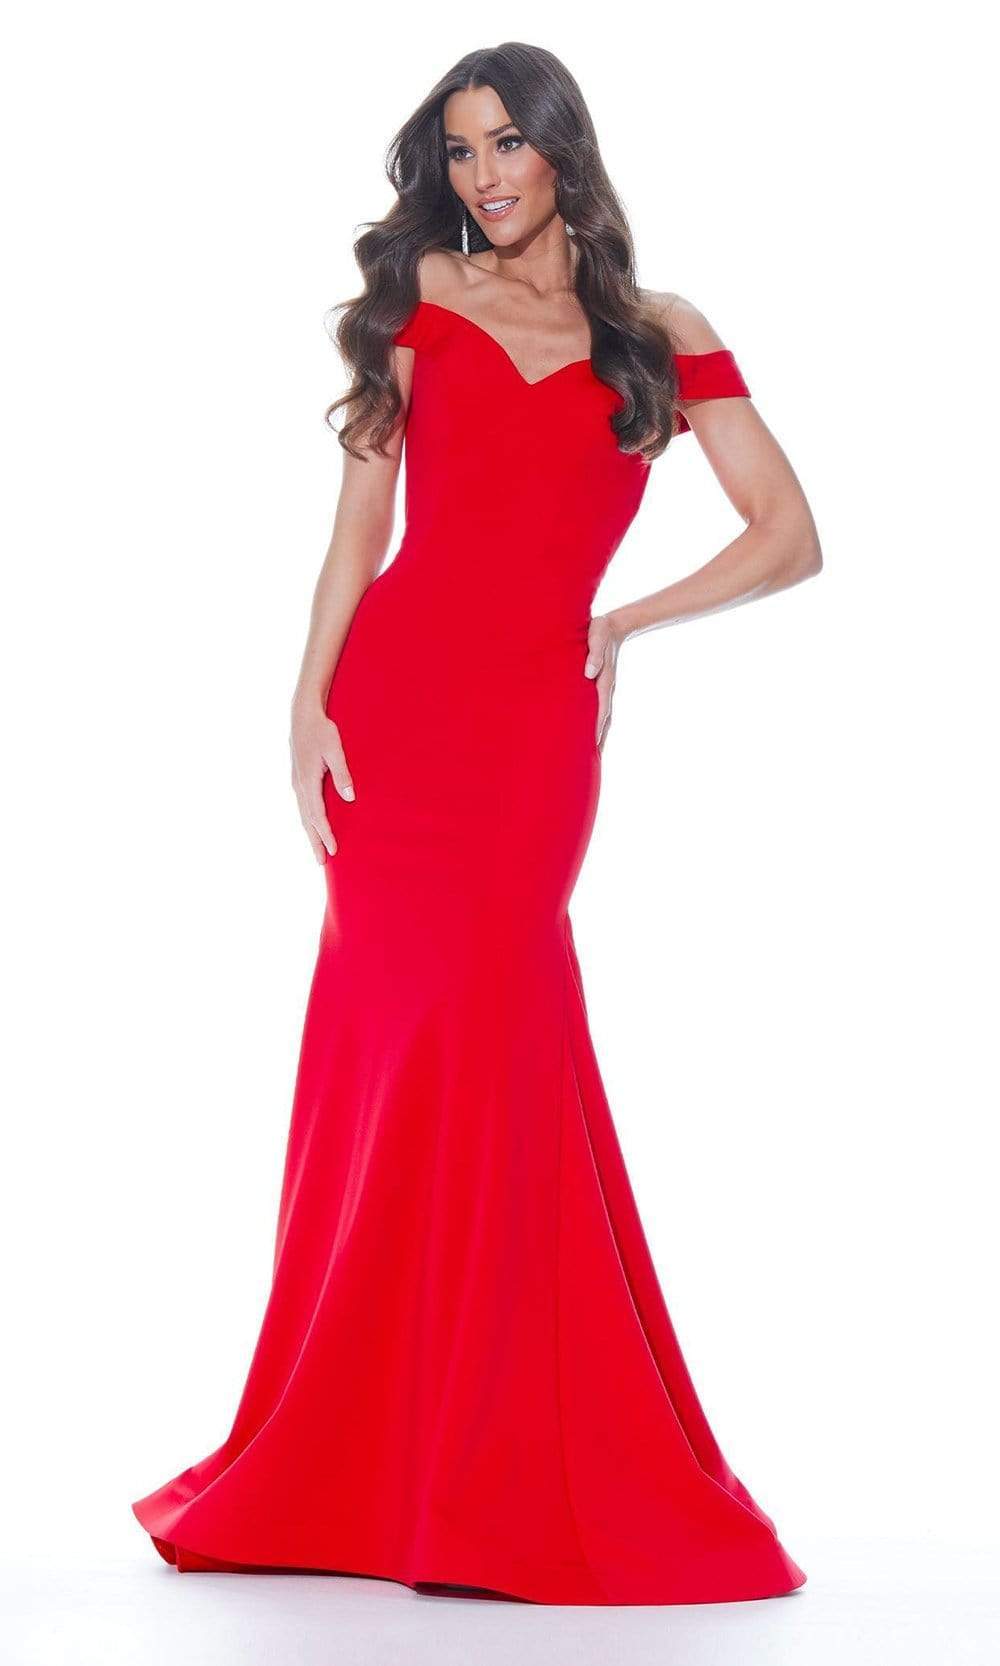 Ashley Lauren - 11025 Off Shoulder Scuba Mermaid Gown Pageant Dresses 0 / Red